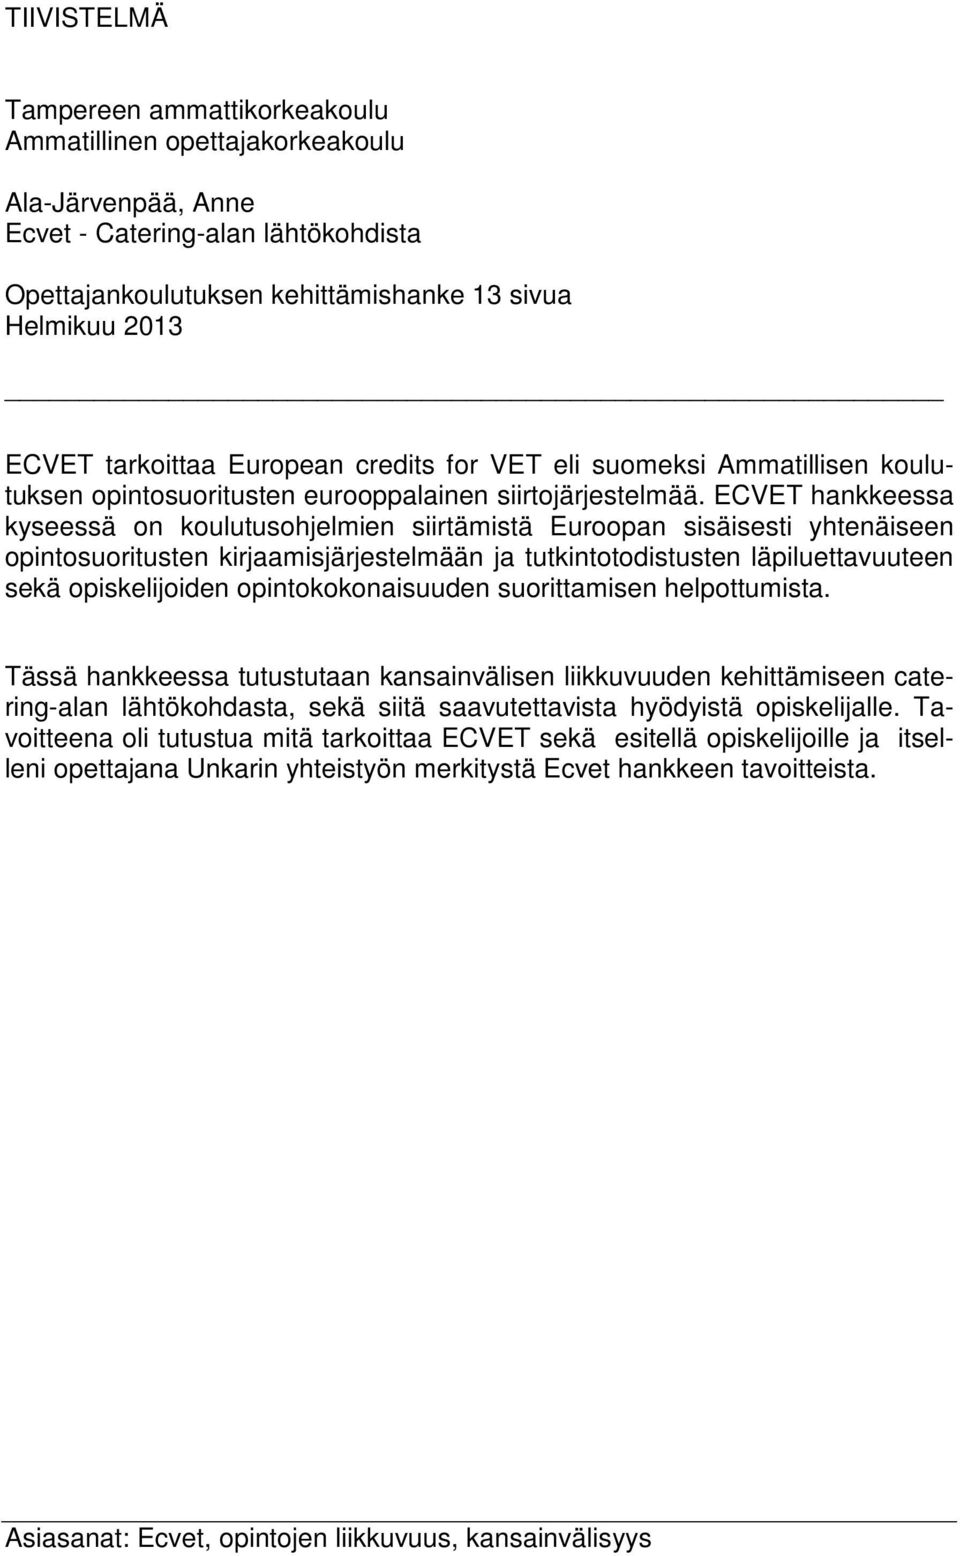 ECVET hankkeessa kyseessä on koulutusohjelmien siirtämistä Euroopan sisäisesti yhtenäiseen opintosuoritusten kirjaamisjärjestelmään ja tutkintotodistusten läpiluettavuuteen sekä opiskelijoiden